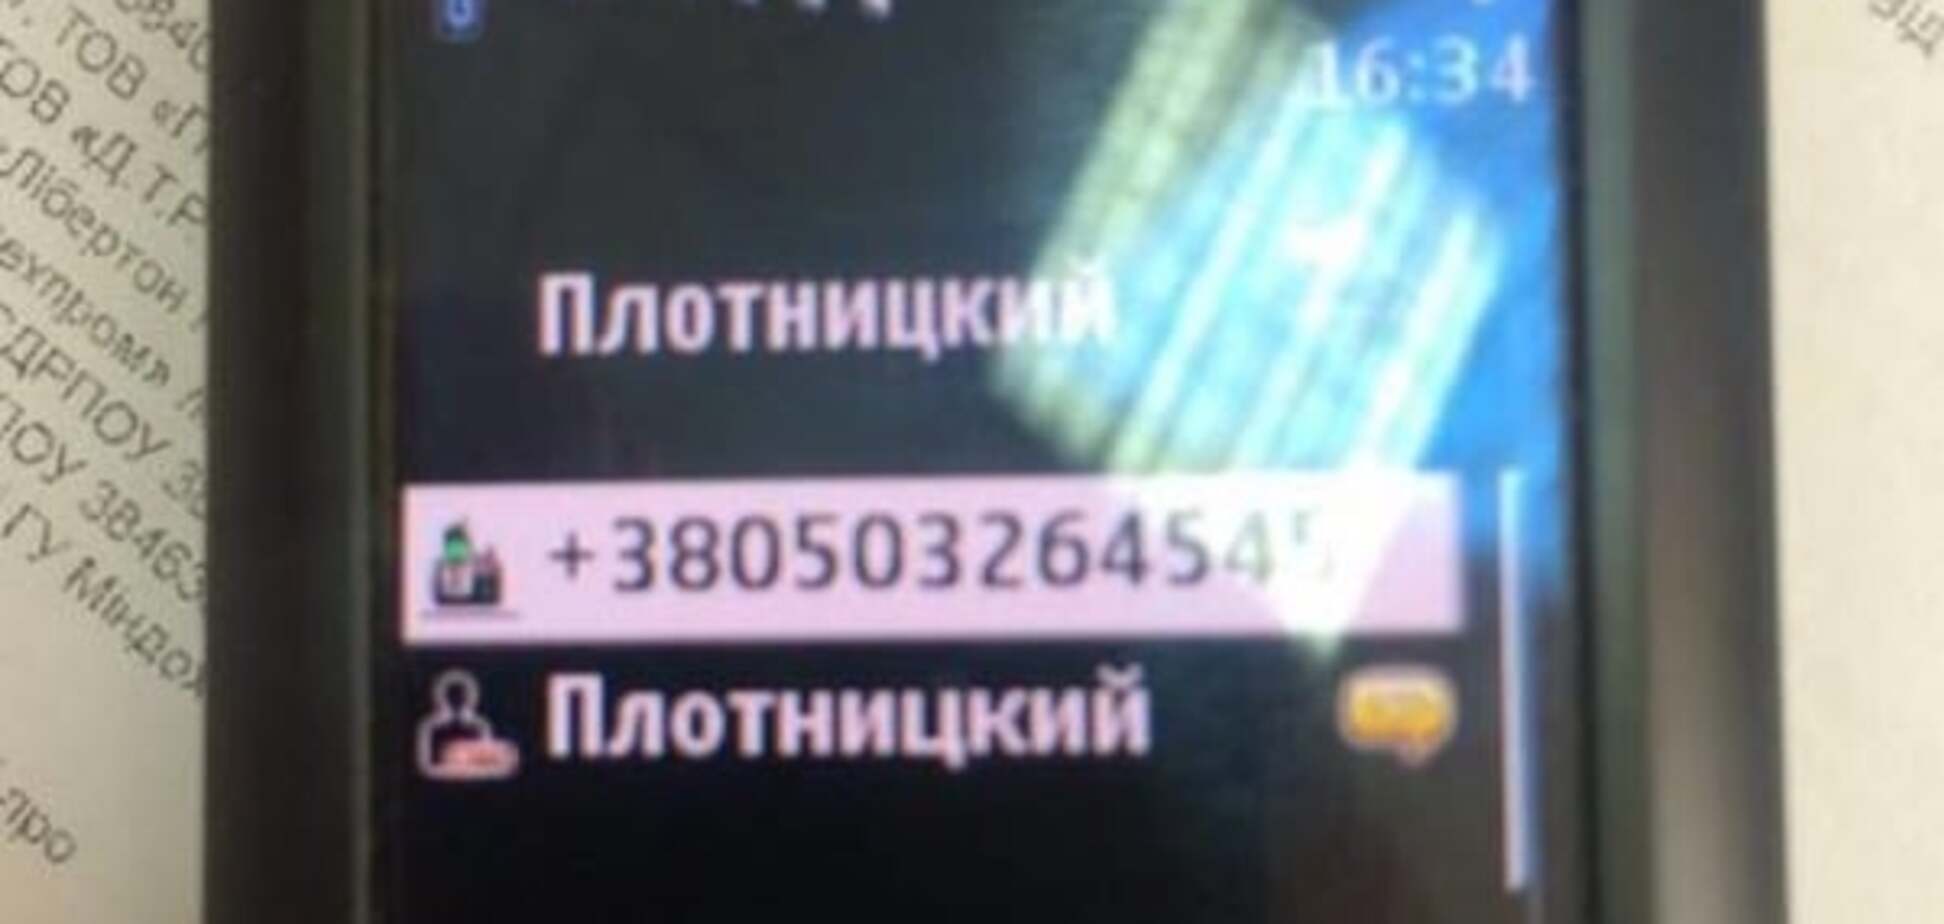 Номер телефона Плотницкого